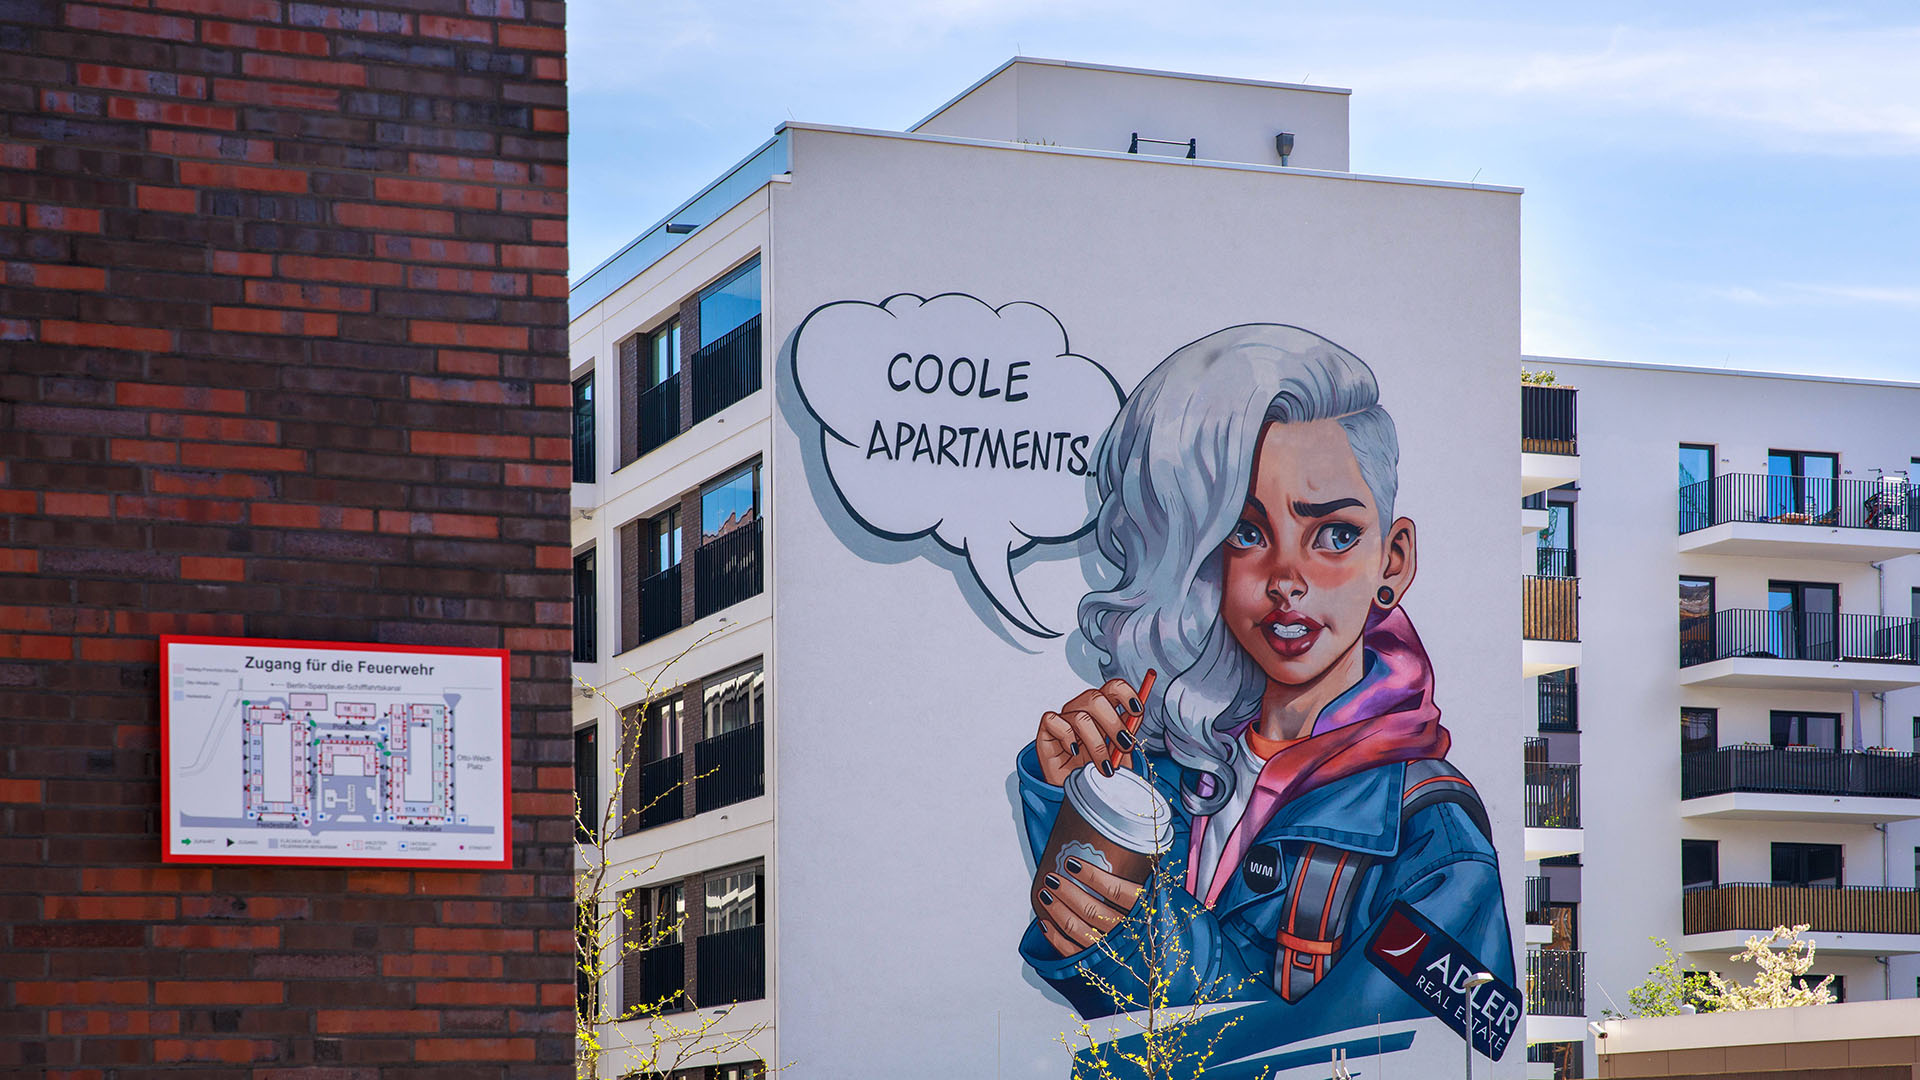 Grafitti mit einer Sprechblase "Coole Appartments" als Werbung der Immobilienfirma Adler. | imago images/Achille Abboud